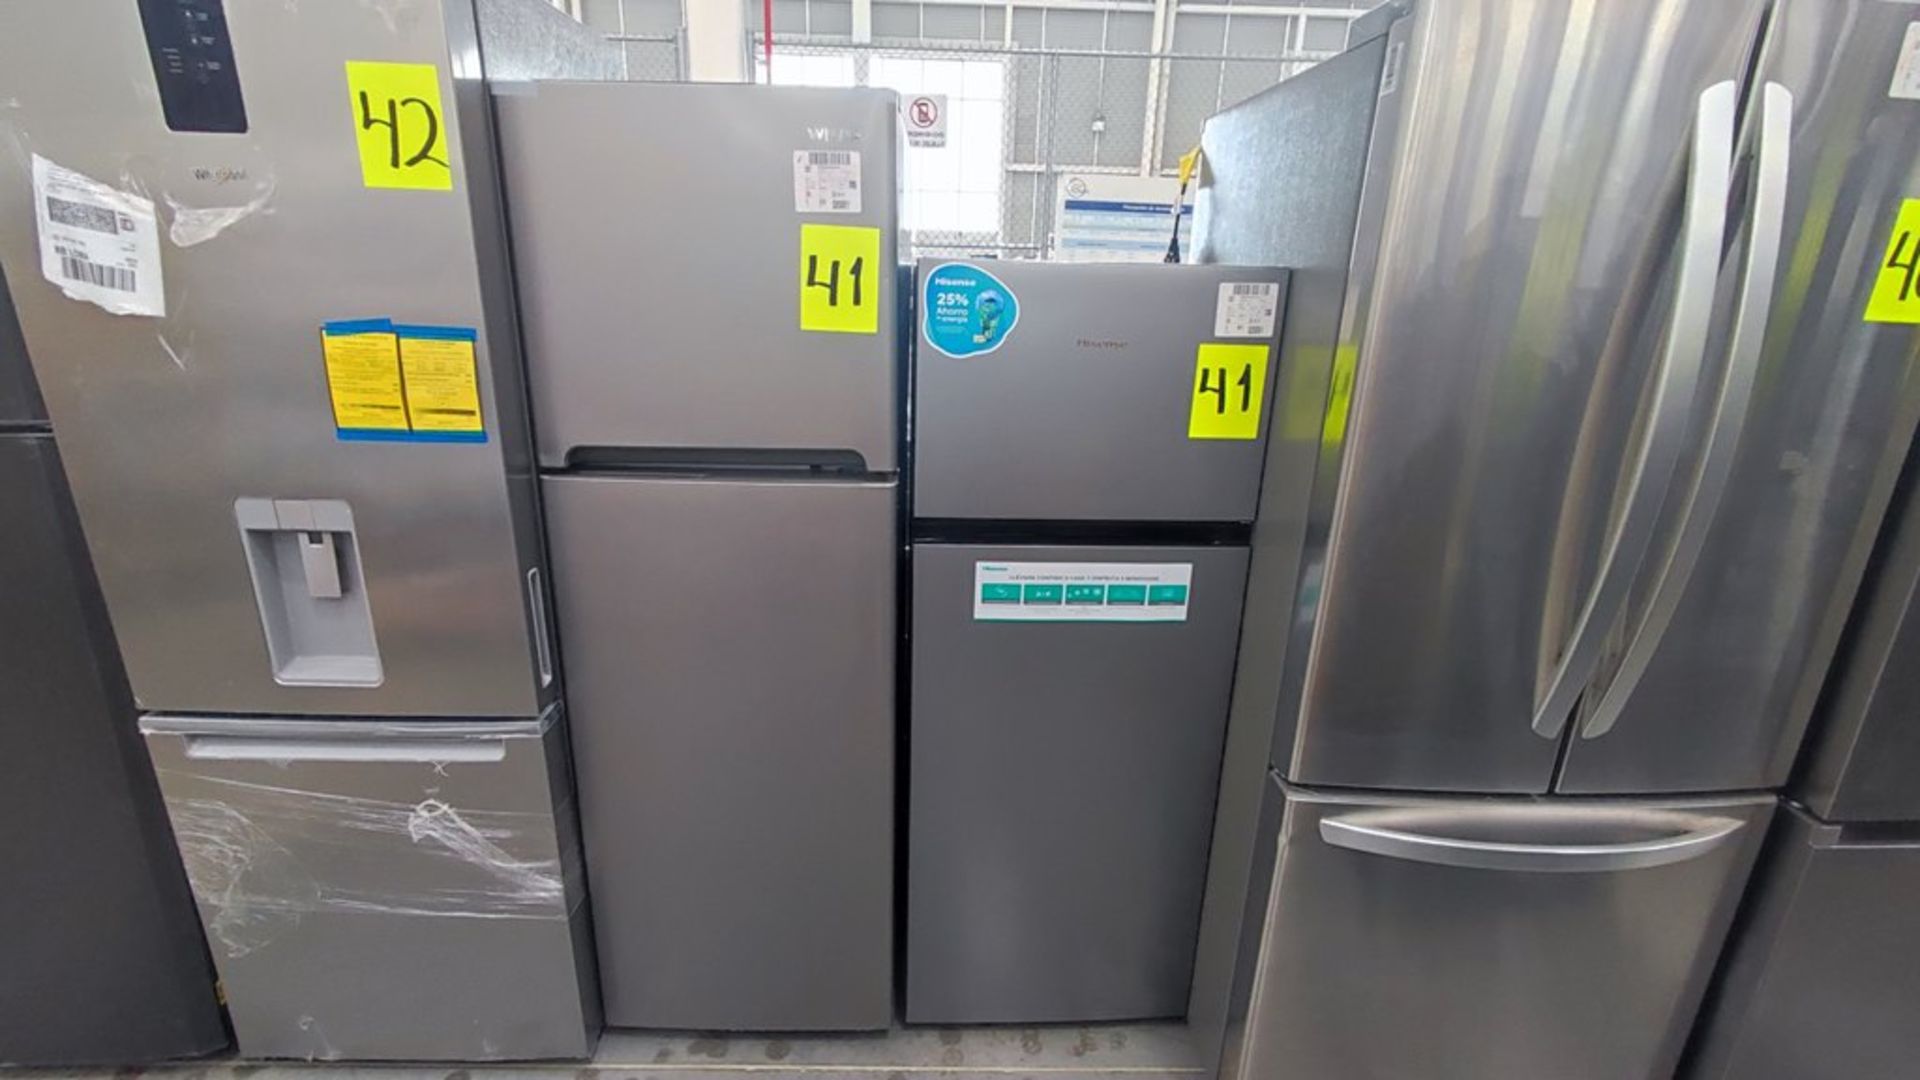 Lote de 2 Refrigeradores contiene: 1 Refrigerador Marca Hisense Modelo BCYNY, No de serie 1B0205Z00